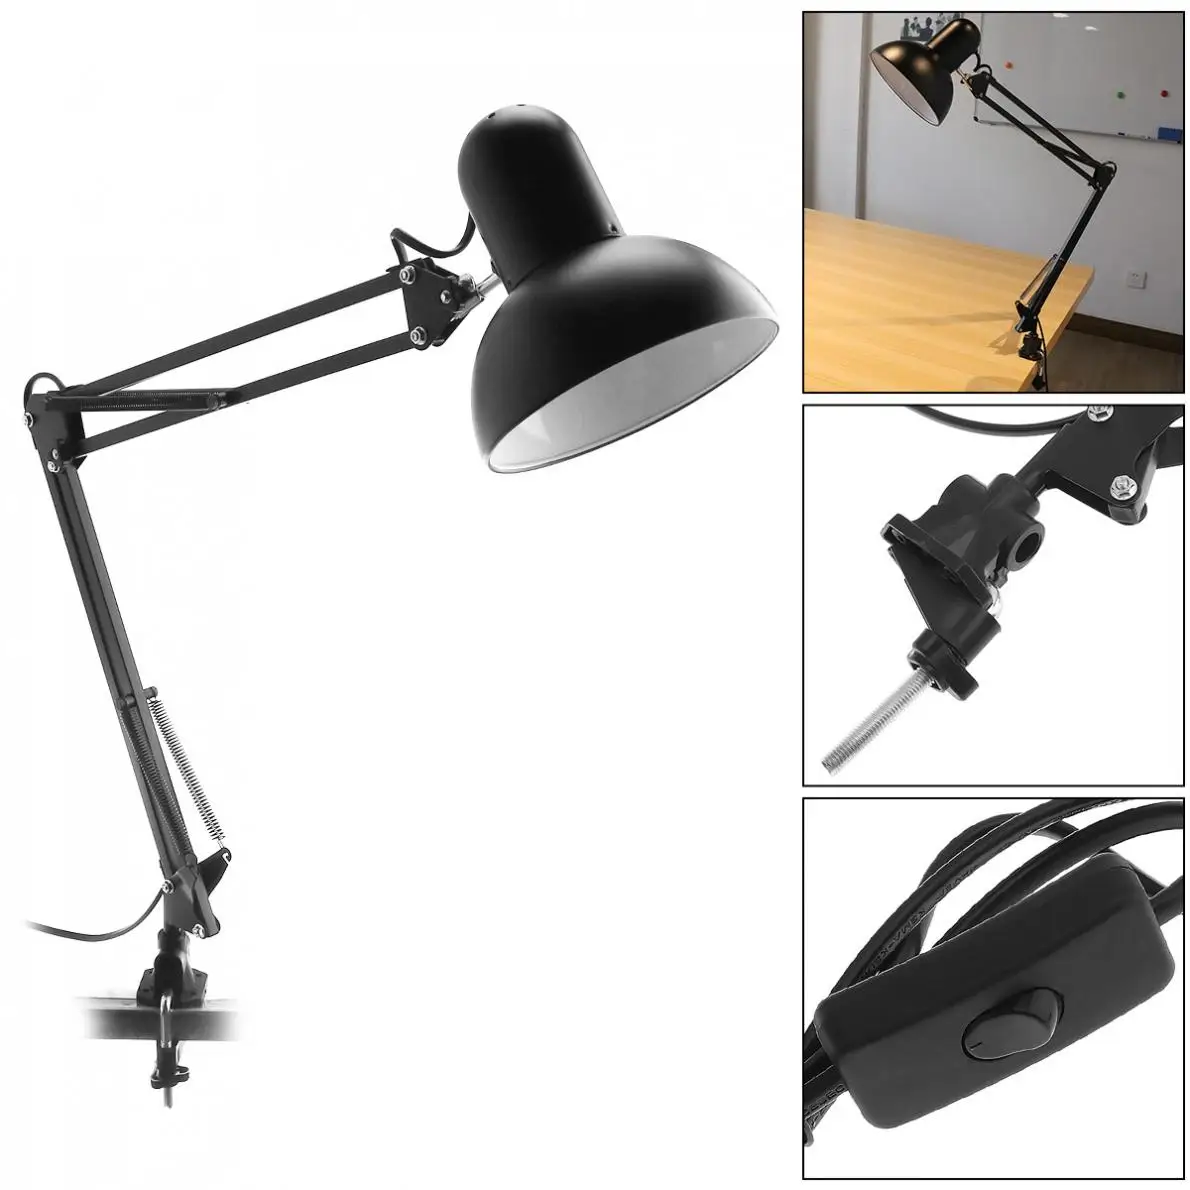 LED Desk Lamp BANGWEIER Black Flexible Swing Arm Clamp Mount Lamp Office Studio Home Table Desk Light 